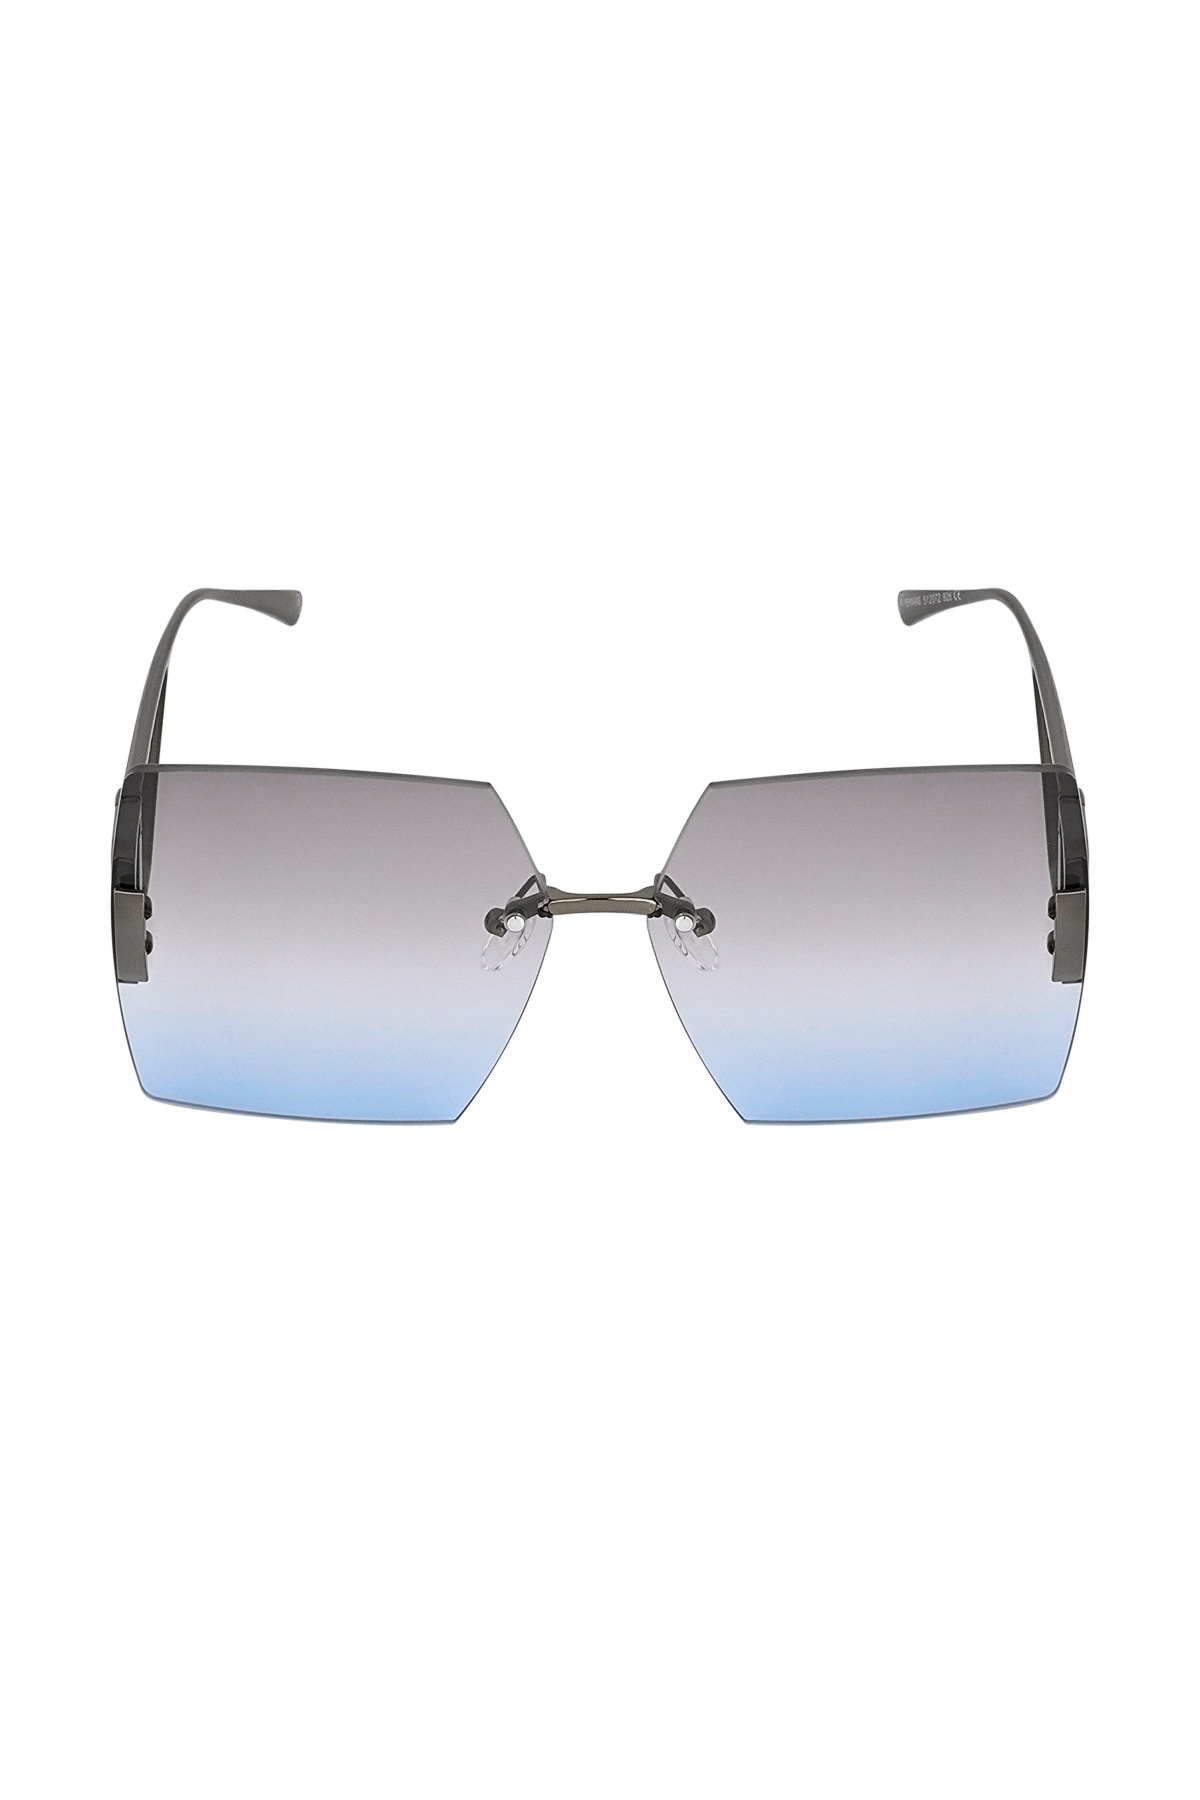 Çerçevesiz kare güneş gözlüğü - mavi h5 Resim2